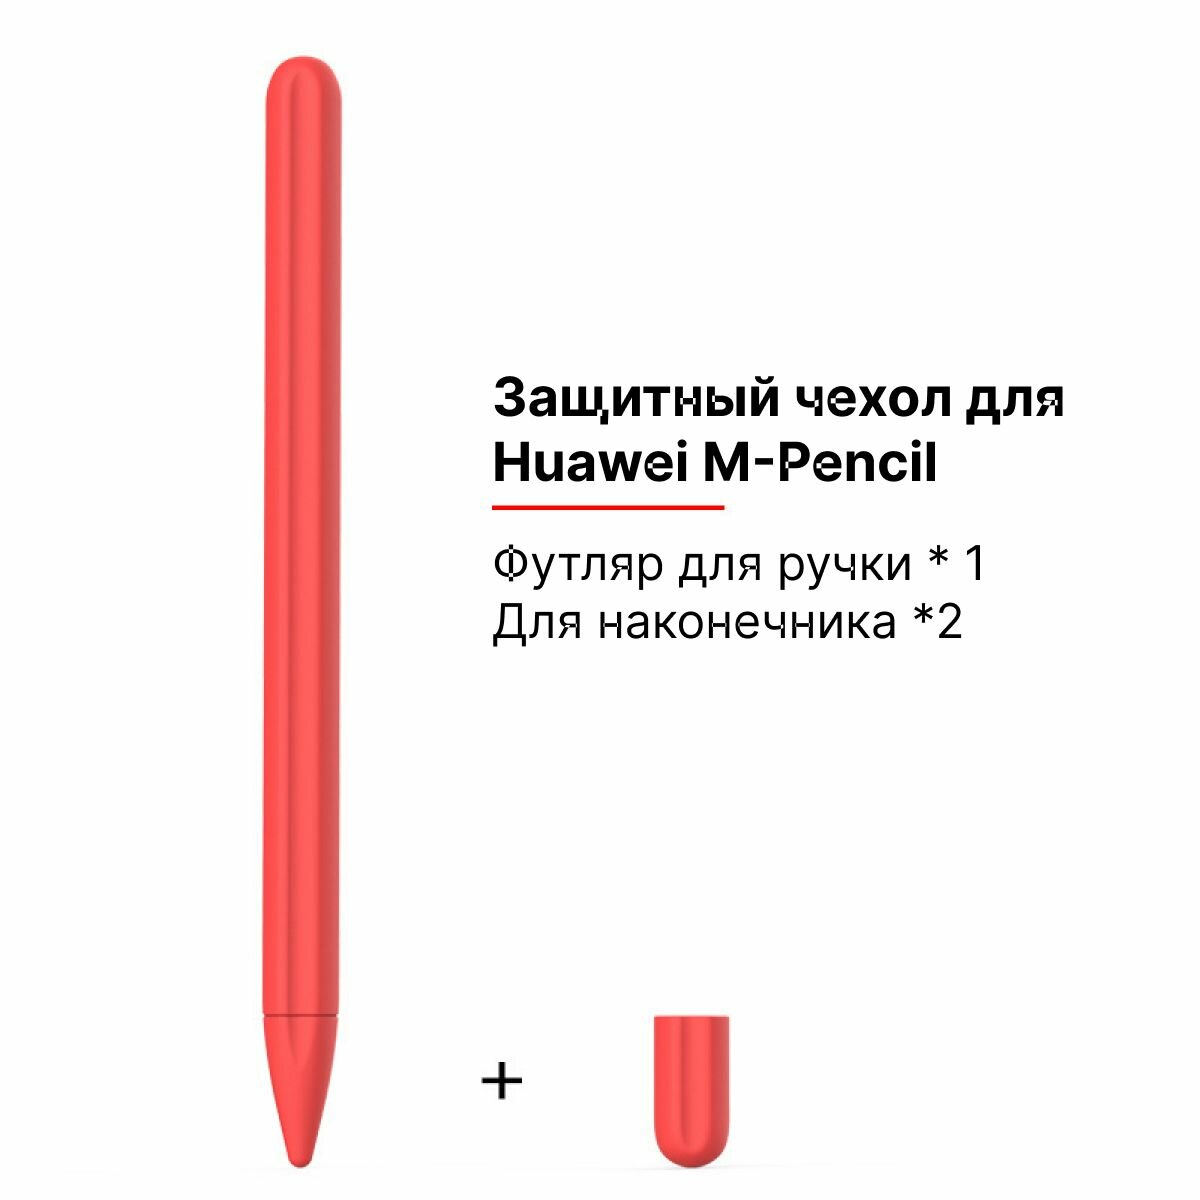 Силиконовый чехол для стилуса M-Pencil Huawei кармин